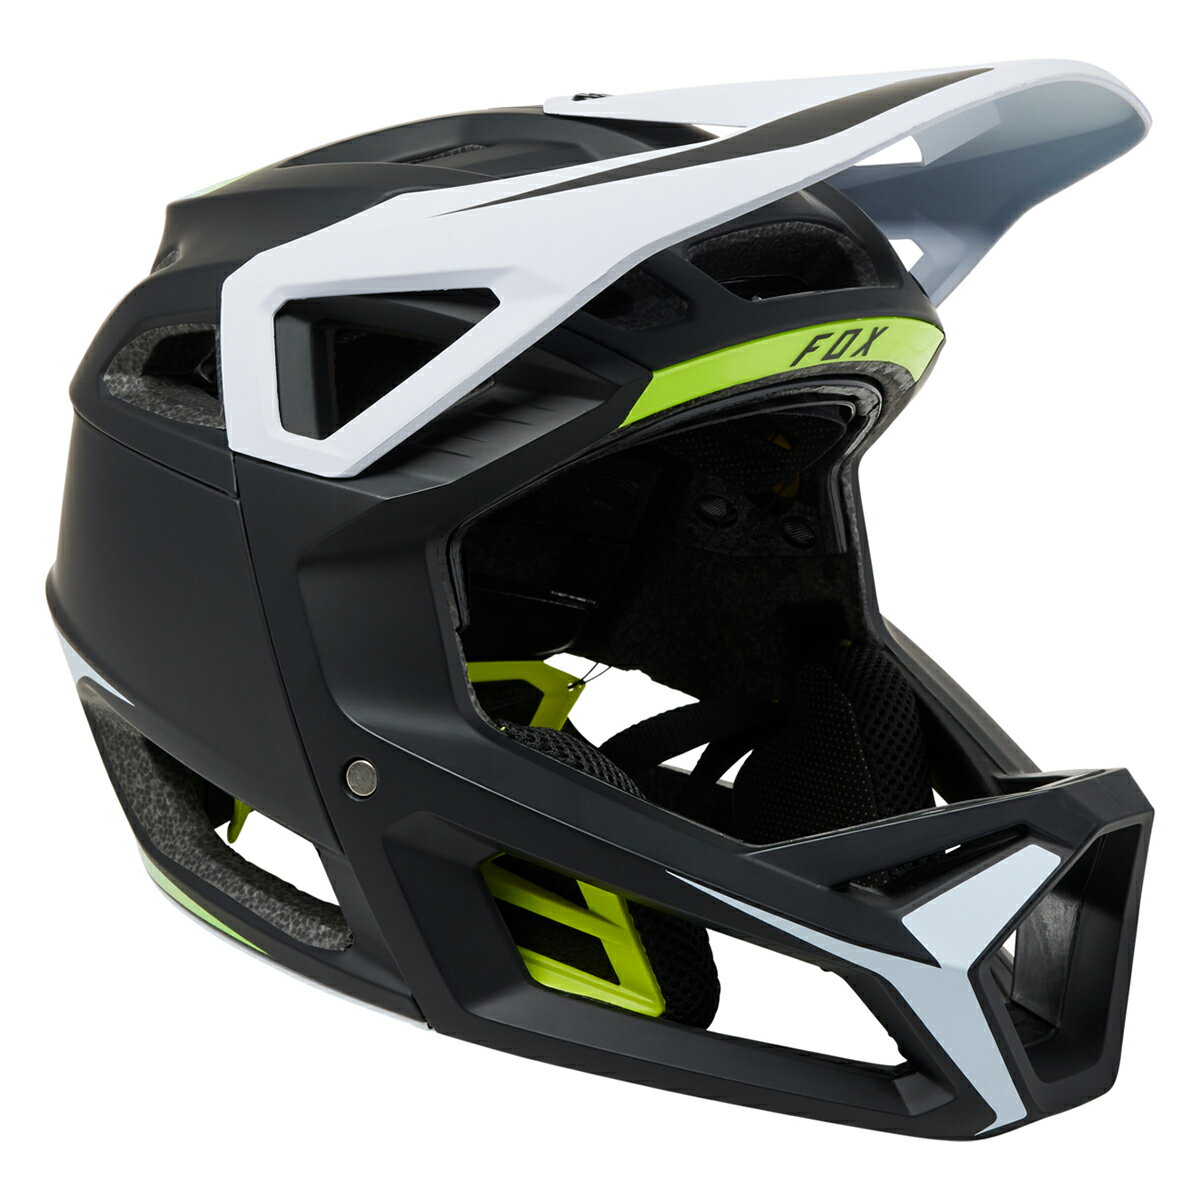 FOX MTB プロフレームRSヘルメット Sサイズ ブラック/イエロー